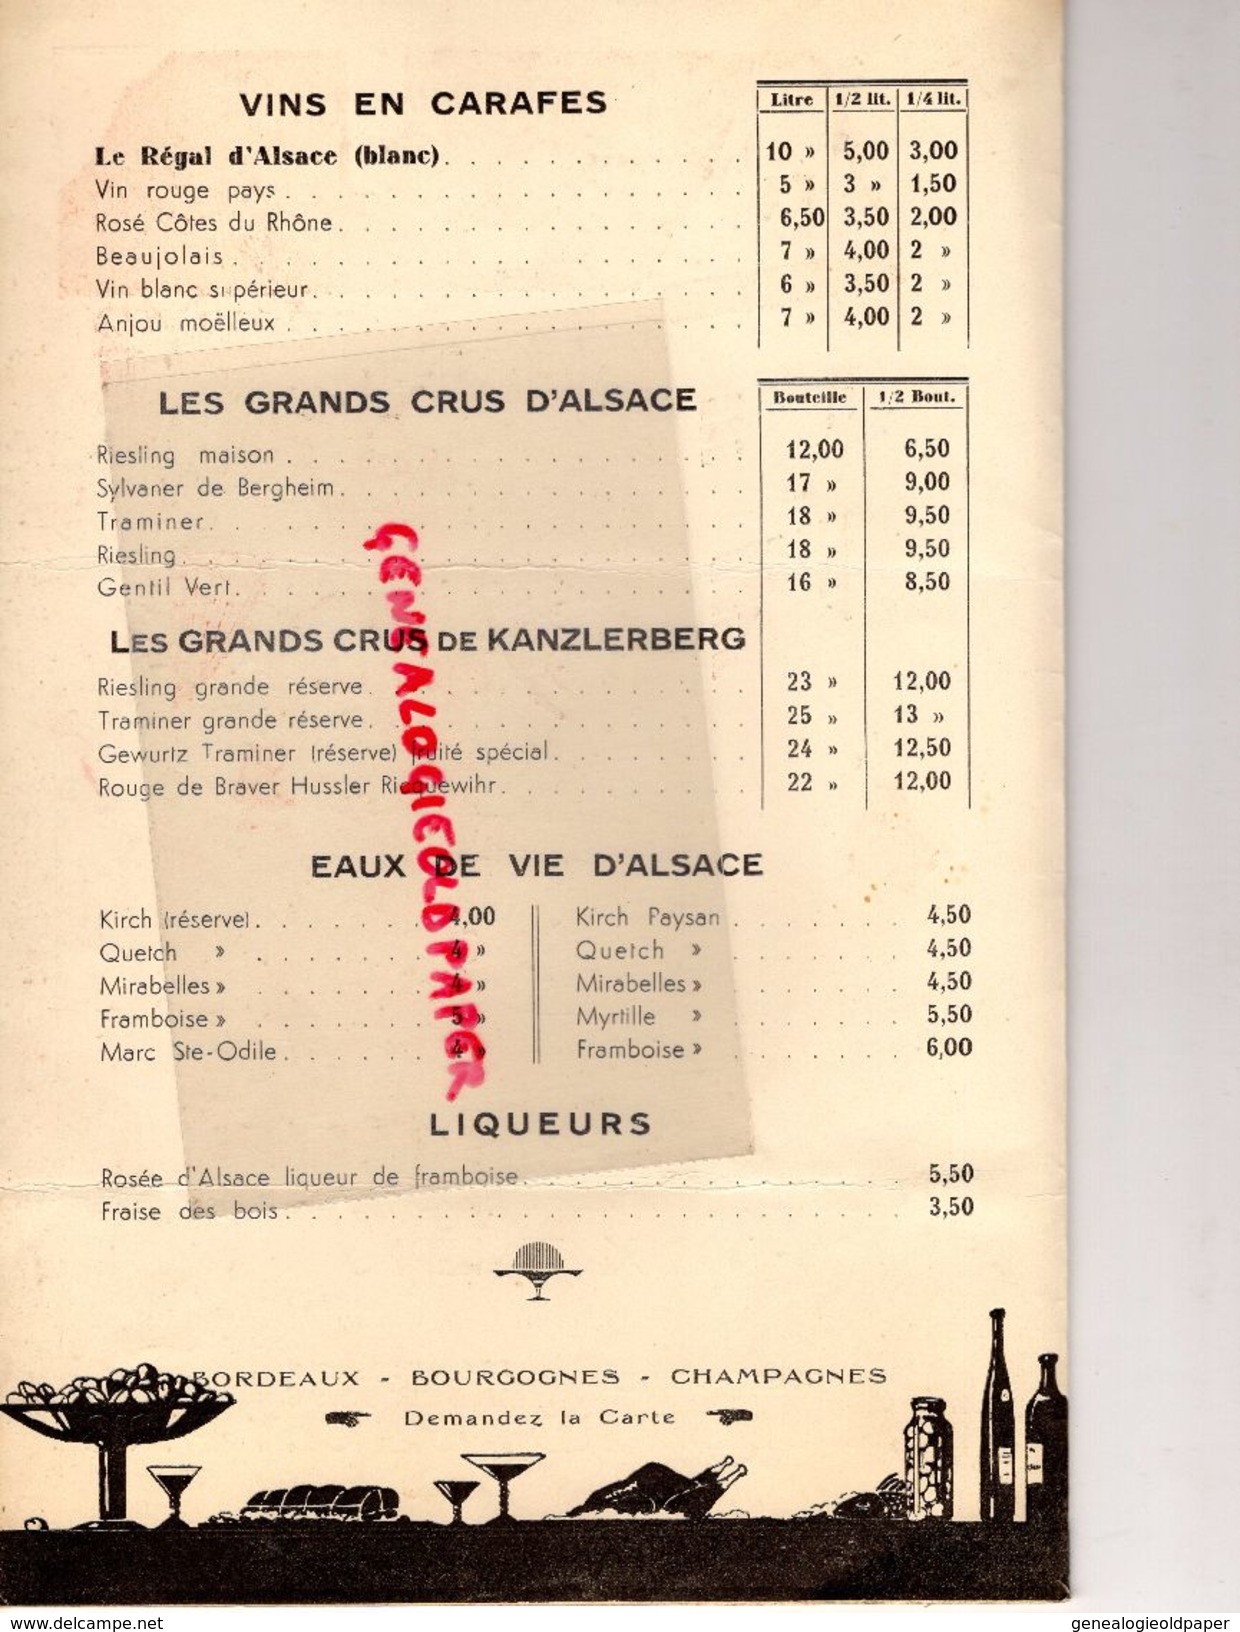 75- PARIS- RARE CARTE MENU BRASSERIE ALSACIENNE AUX 3 EPIS-110 BD. DE CLICHY-18 AVRIL 1935- IMPRIMERIE ASSELINEAU - Menus